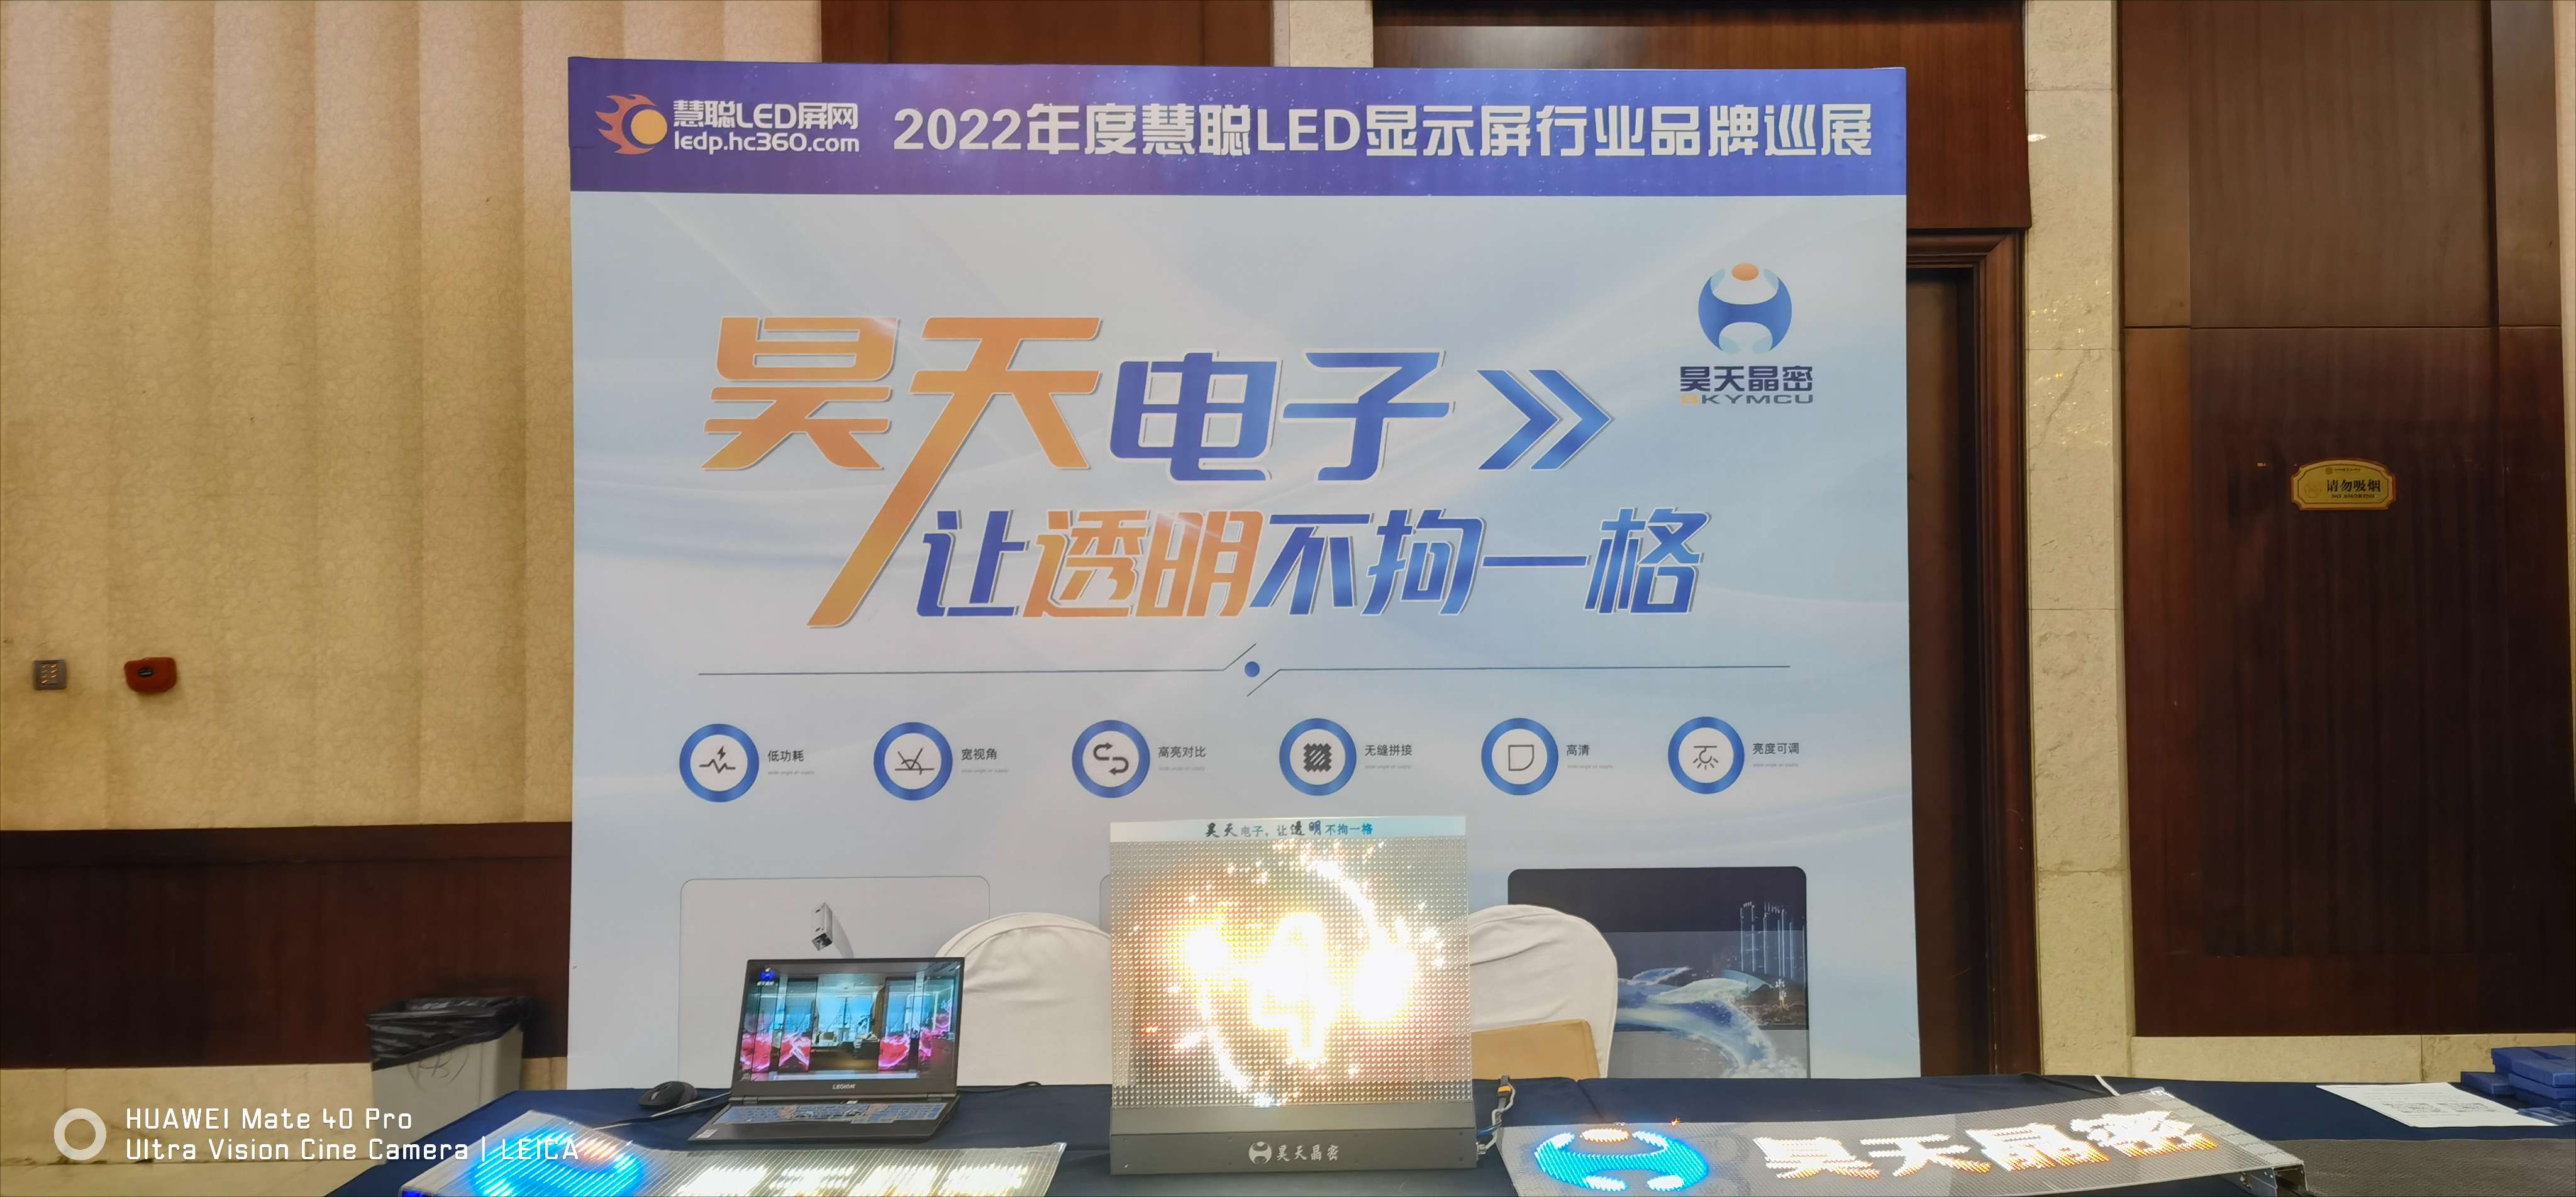 2022昊天電子產品全國巡展--鄭州 “定制透明方案一體化解決服務商，讓透明不拘一格”